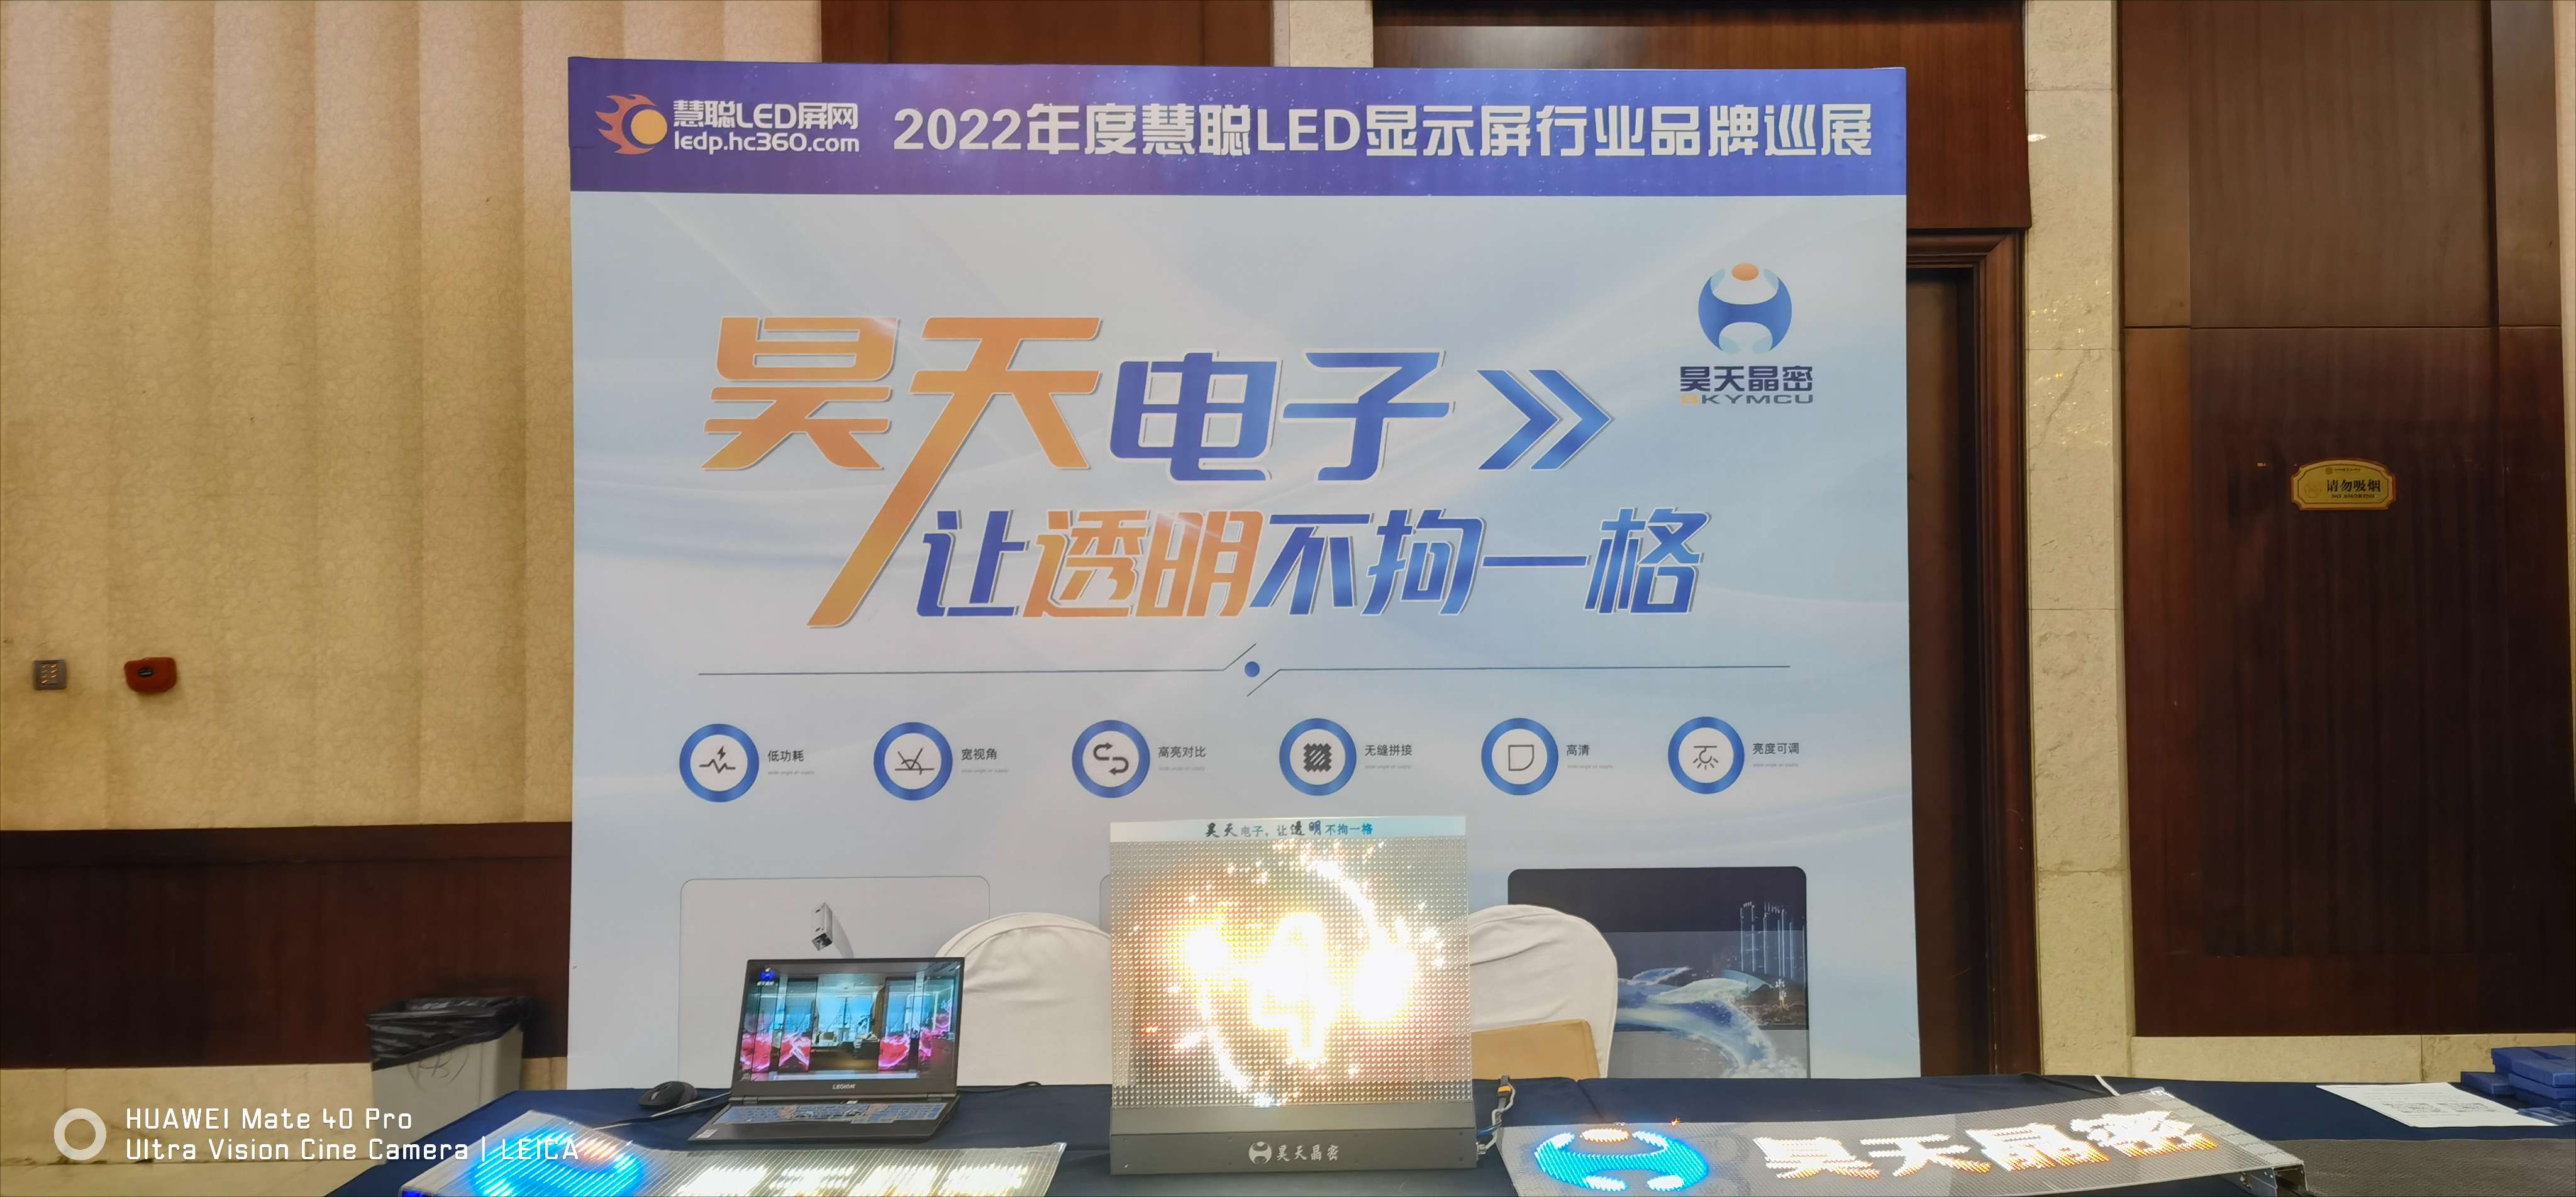 2022昊天電子產品全國巡展--鄭州 “定制透明方案一體化解決服務商，讓透明不拘一格”